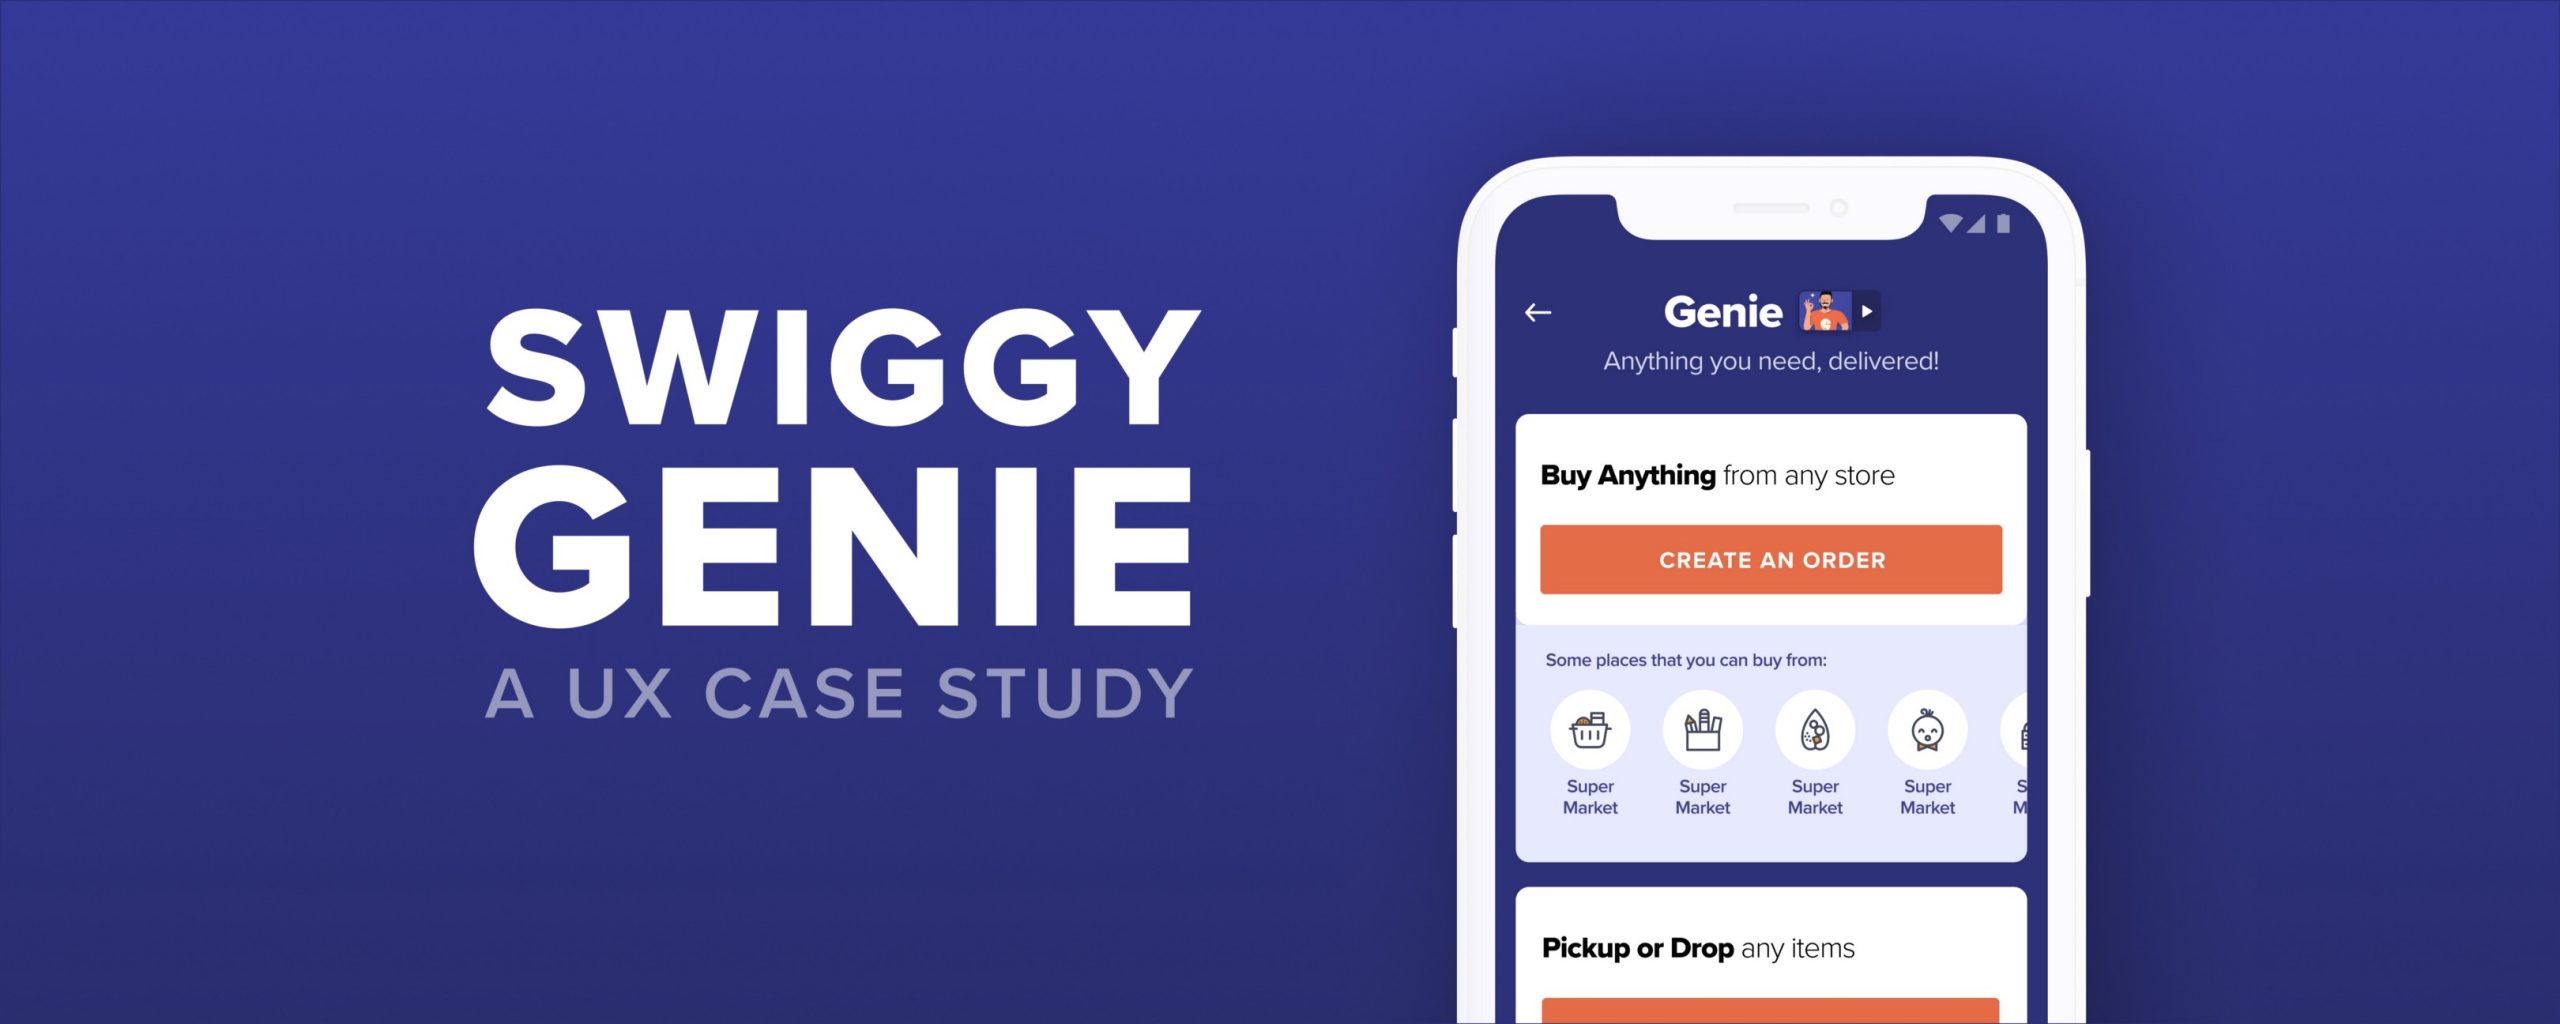 Swiggy Genie— A UX case study